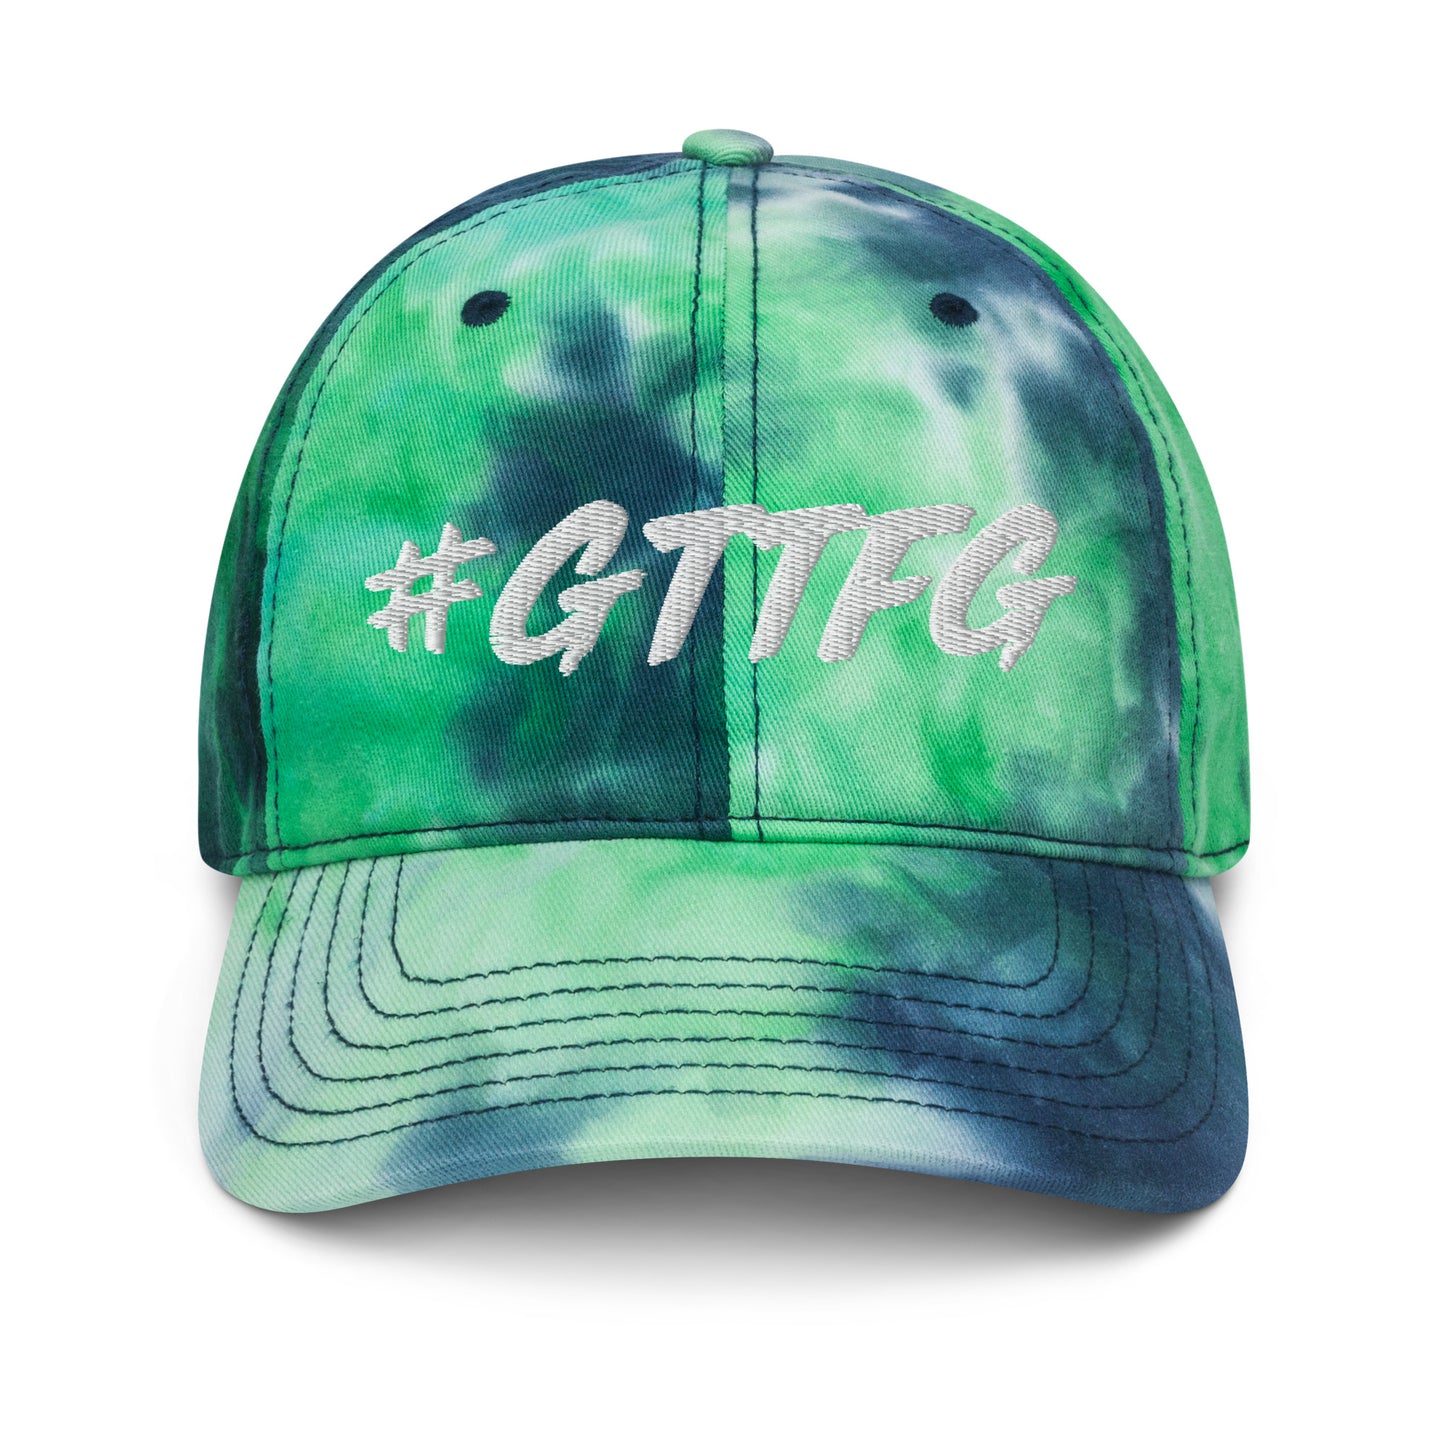 GTTFG Tie Dye Hat